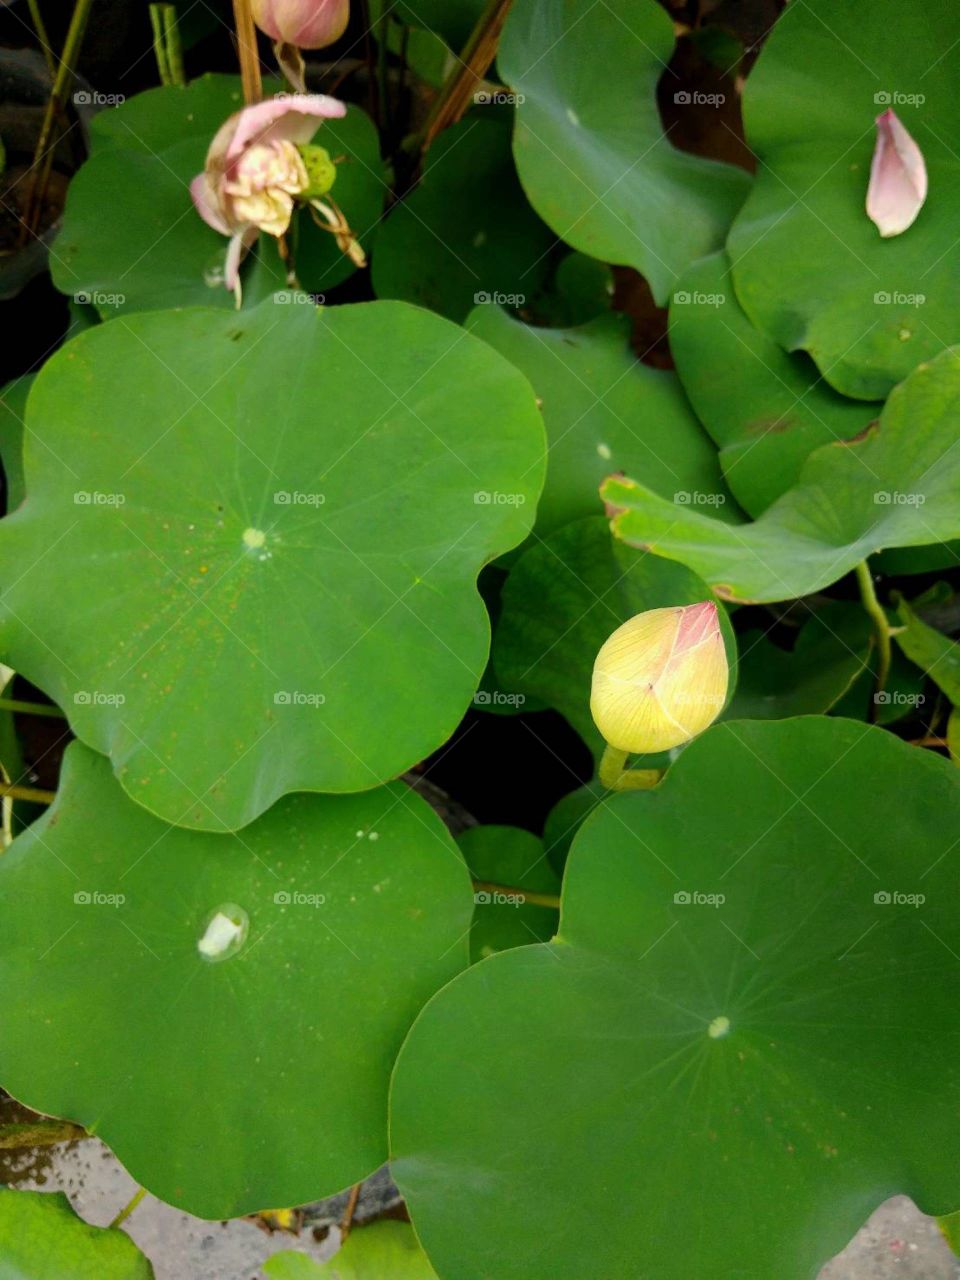 Lotus leaves.